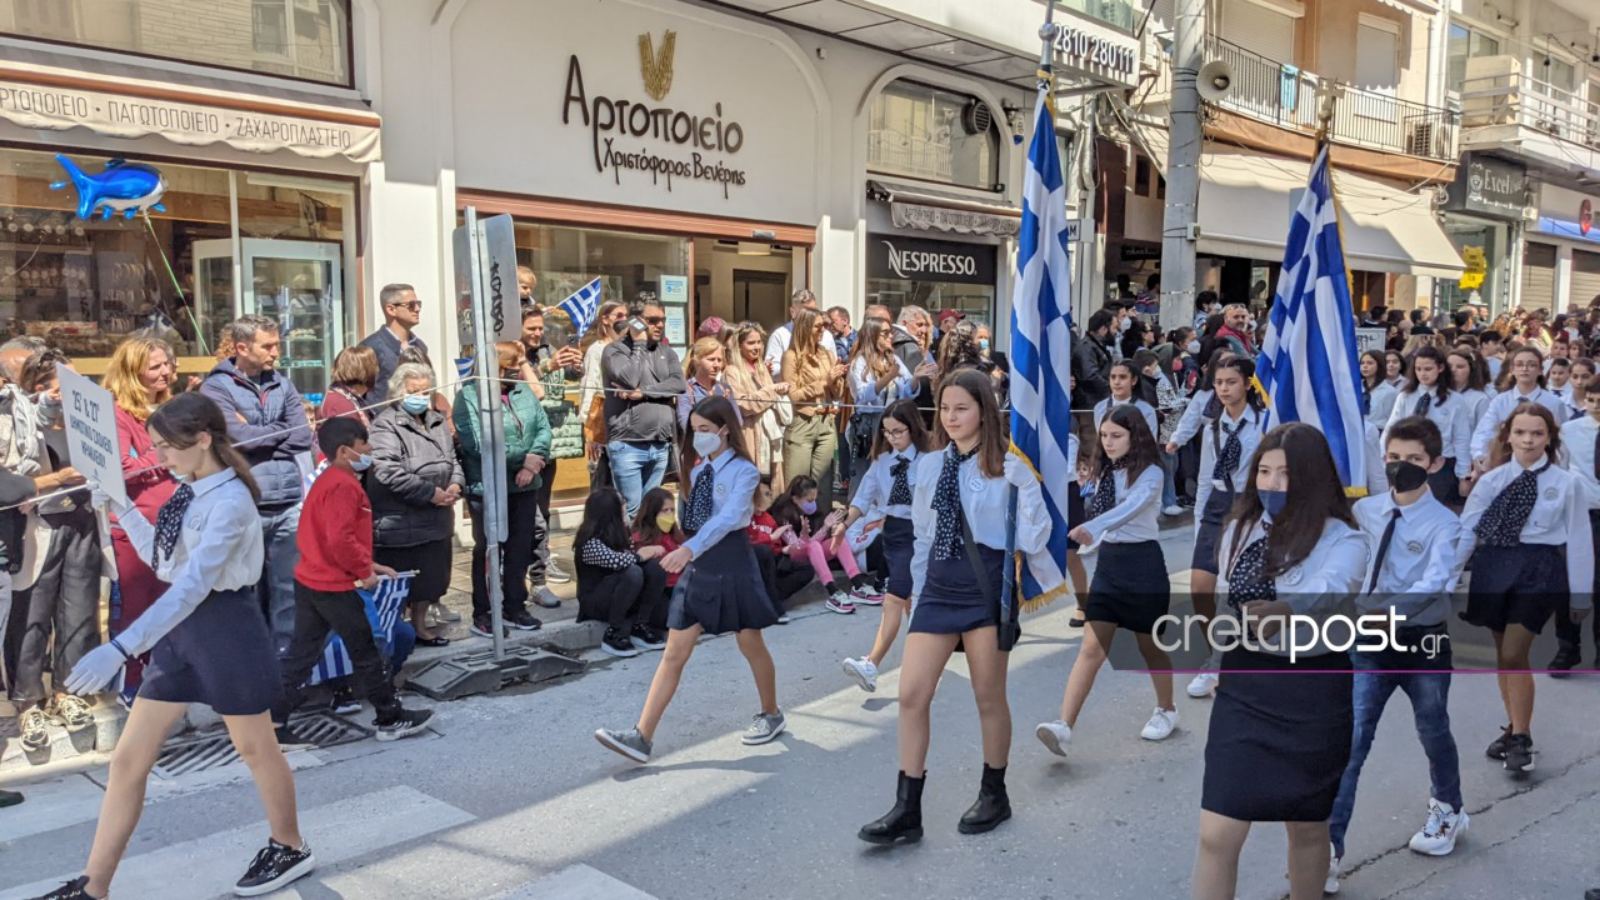 Μαθητική παρέλαση στο Ηράκλειο: Κοσμοσυρροή μετά από τρία χρόνια – Εικόνες από το κέντρο της πόλης